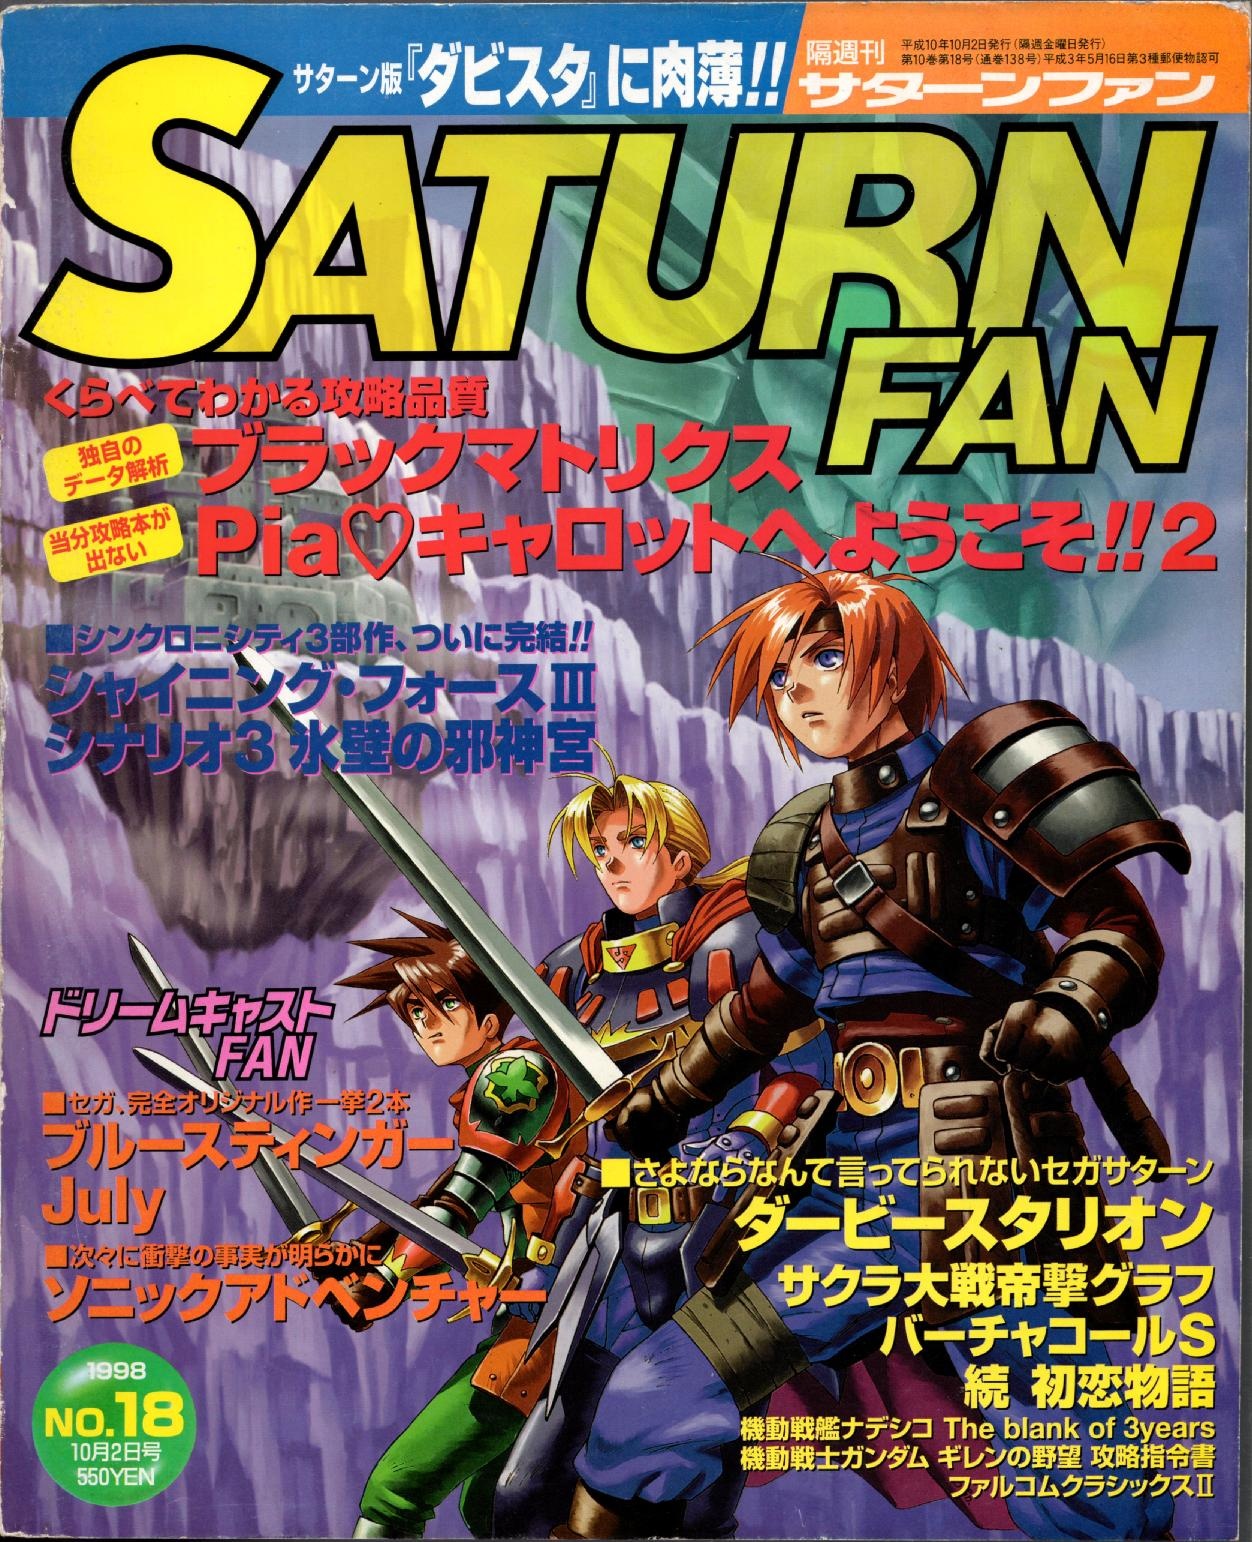 SaturnFan JP 1998-18 19981002.pdf